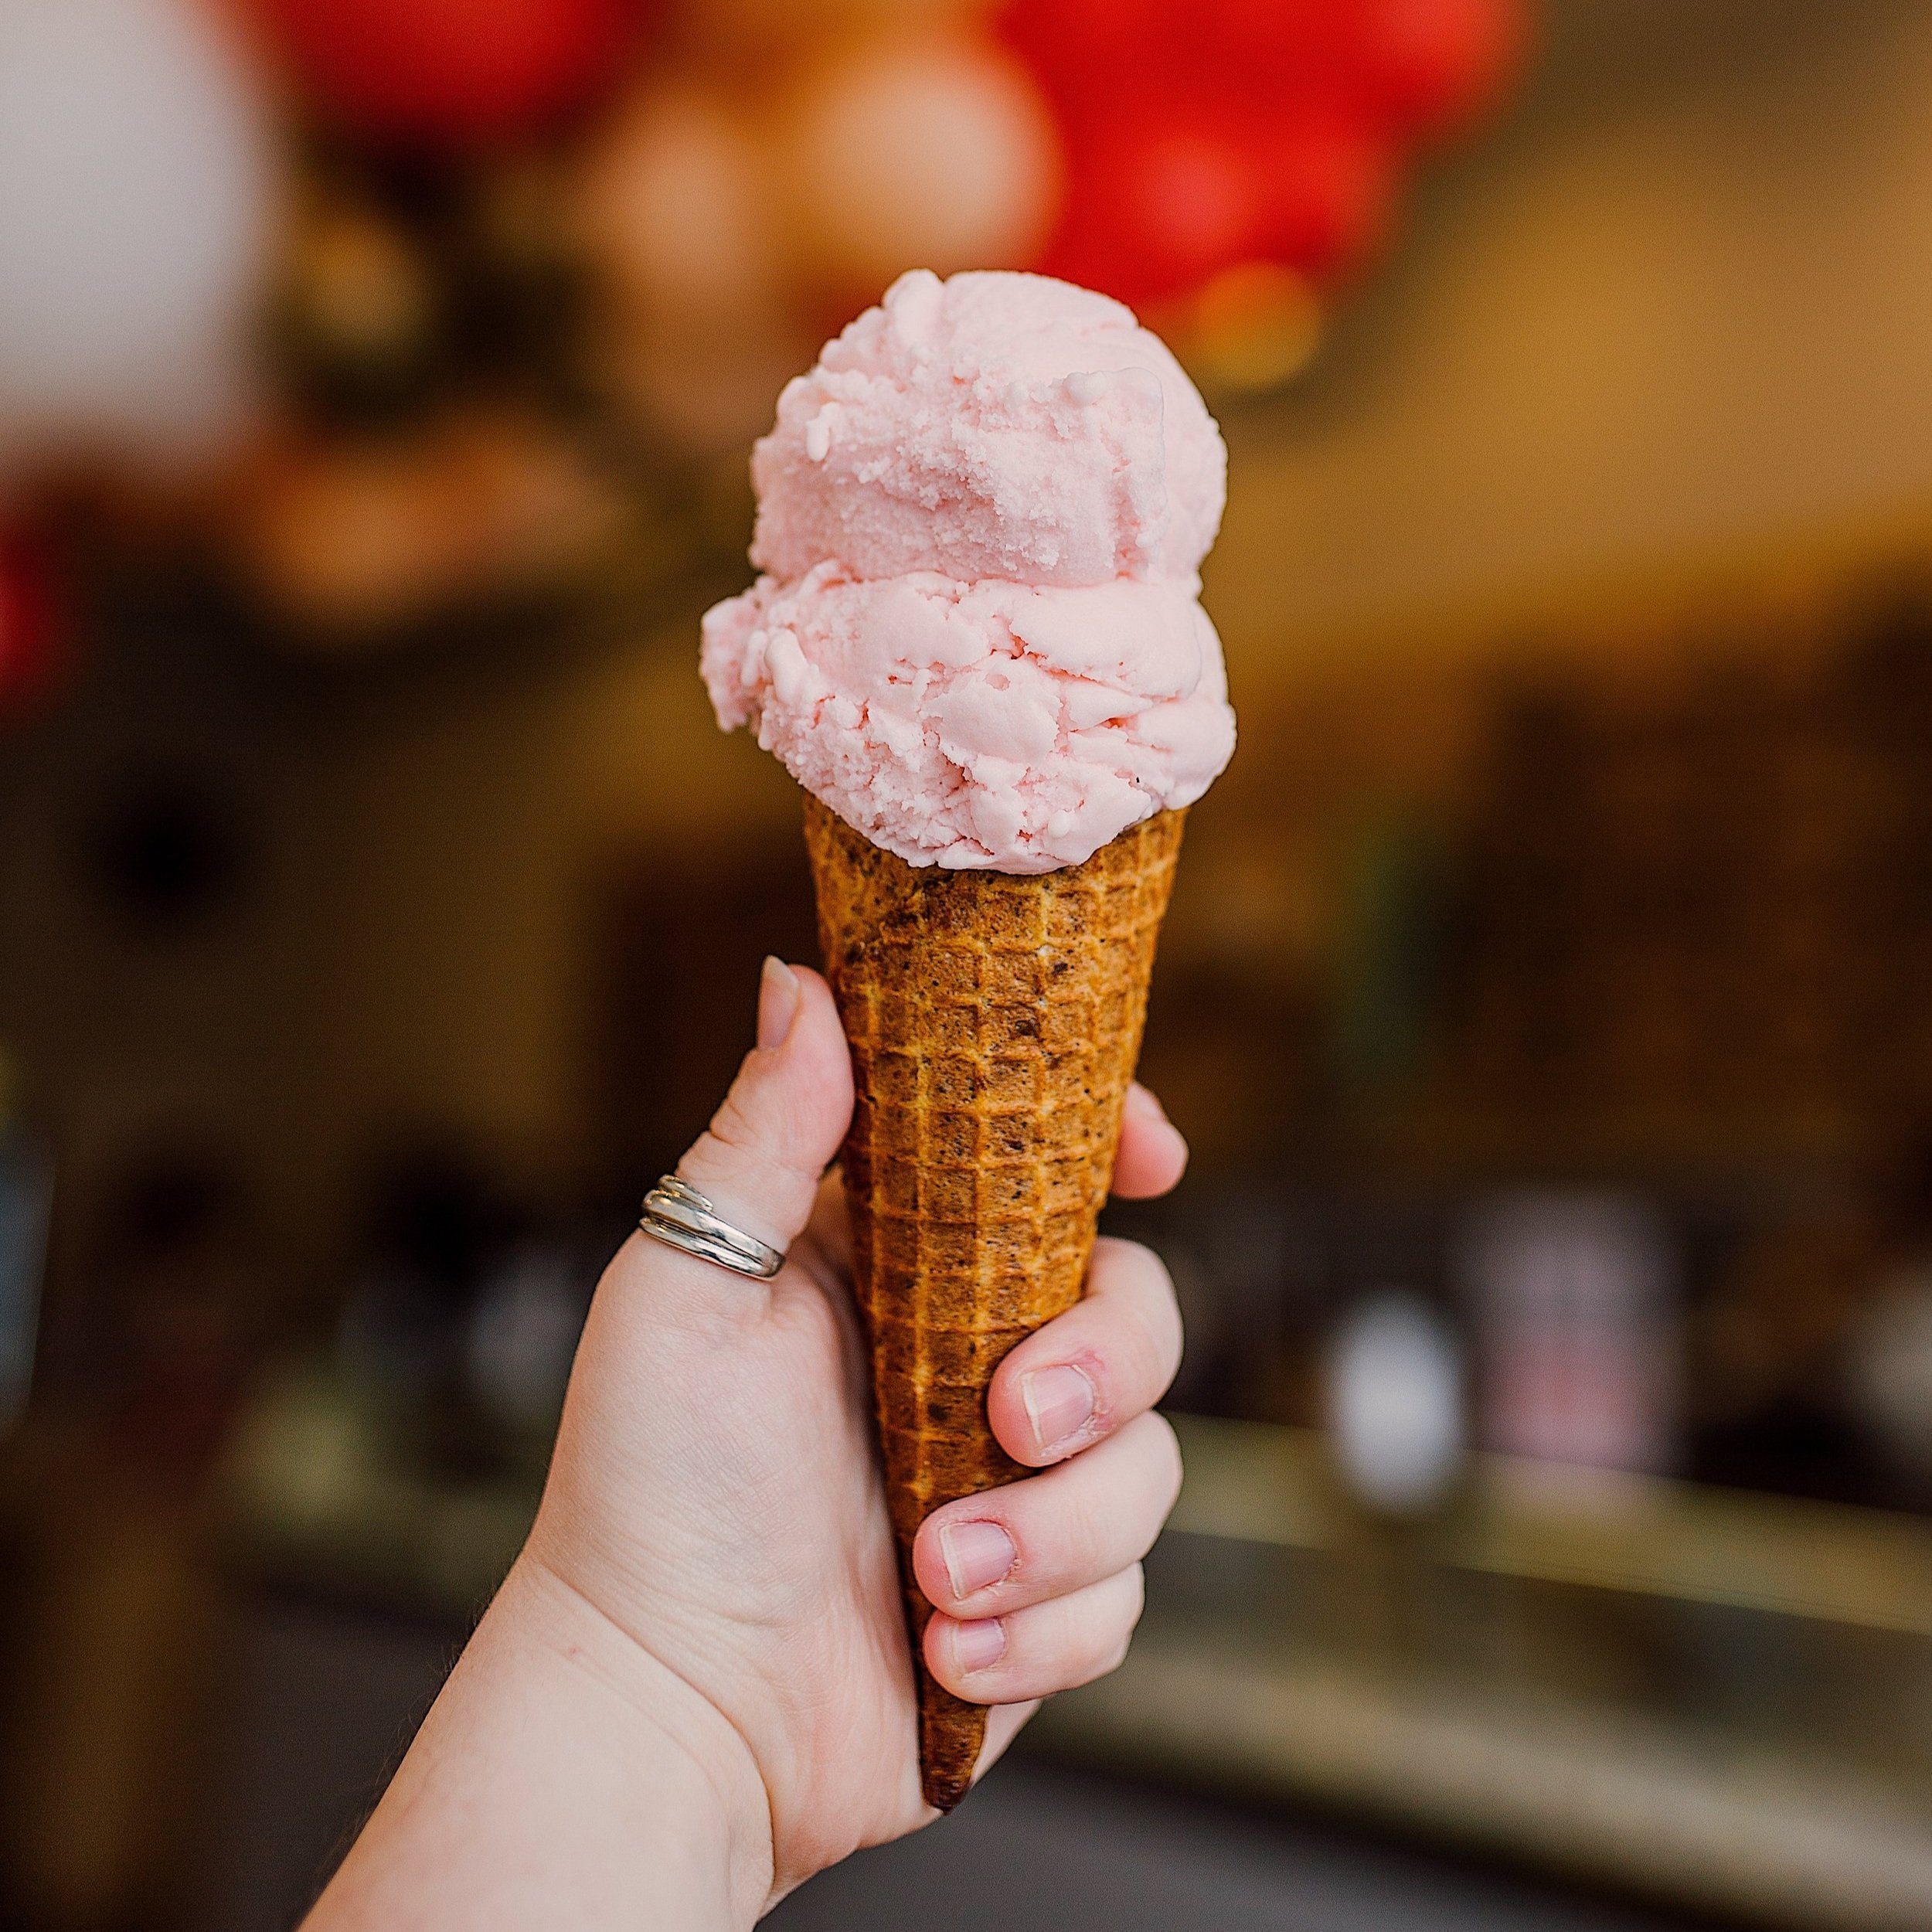 Strawberry Buttermilk Ice Cream Cone At Loblolly creamery